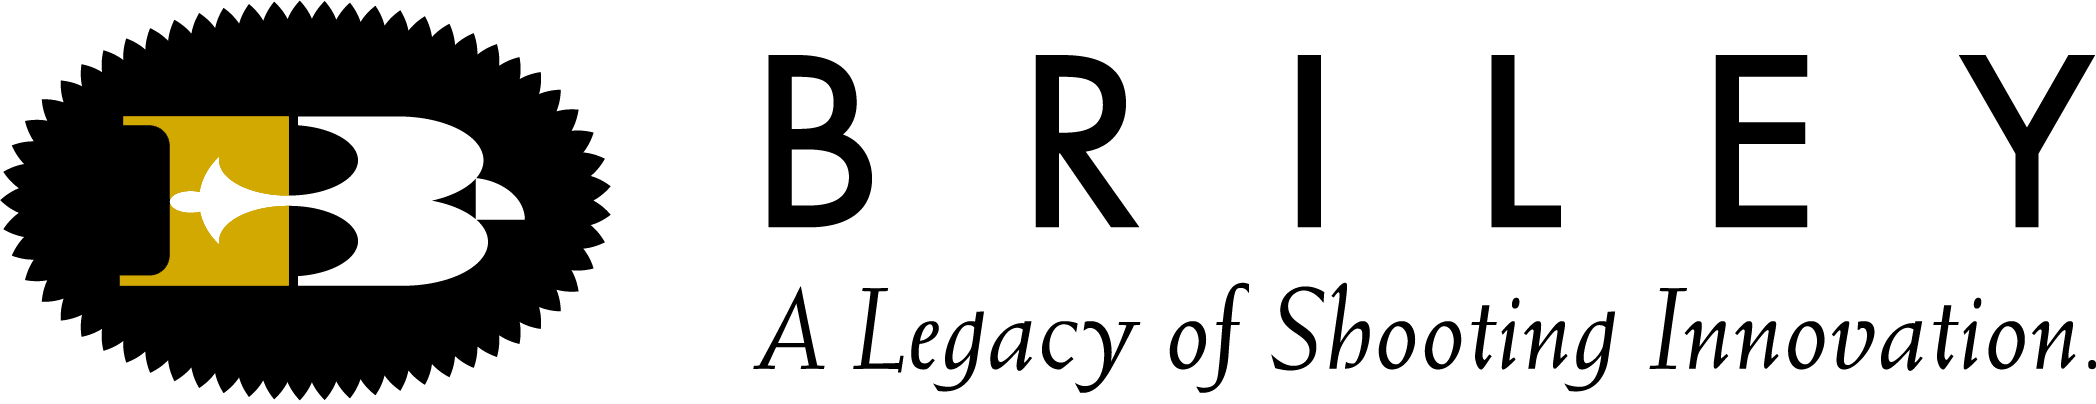 Briley logo